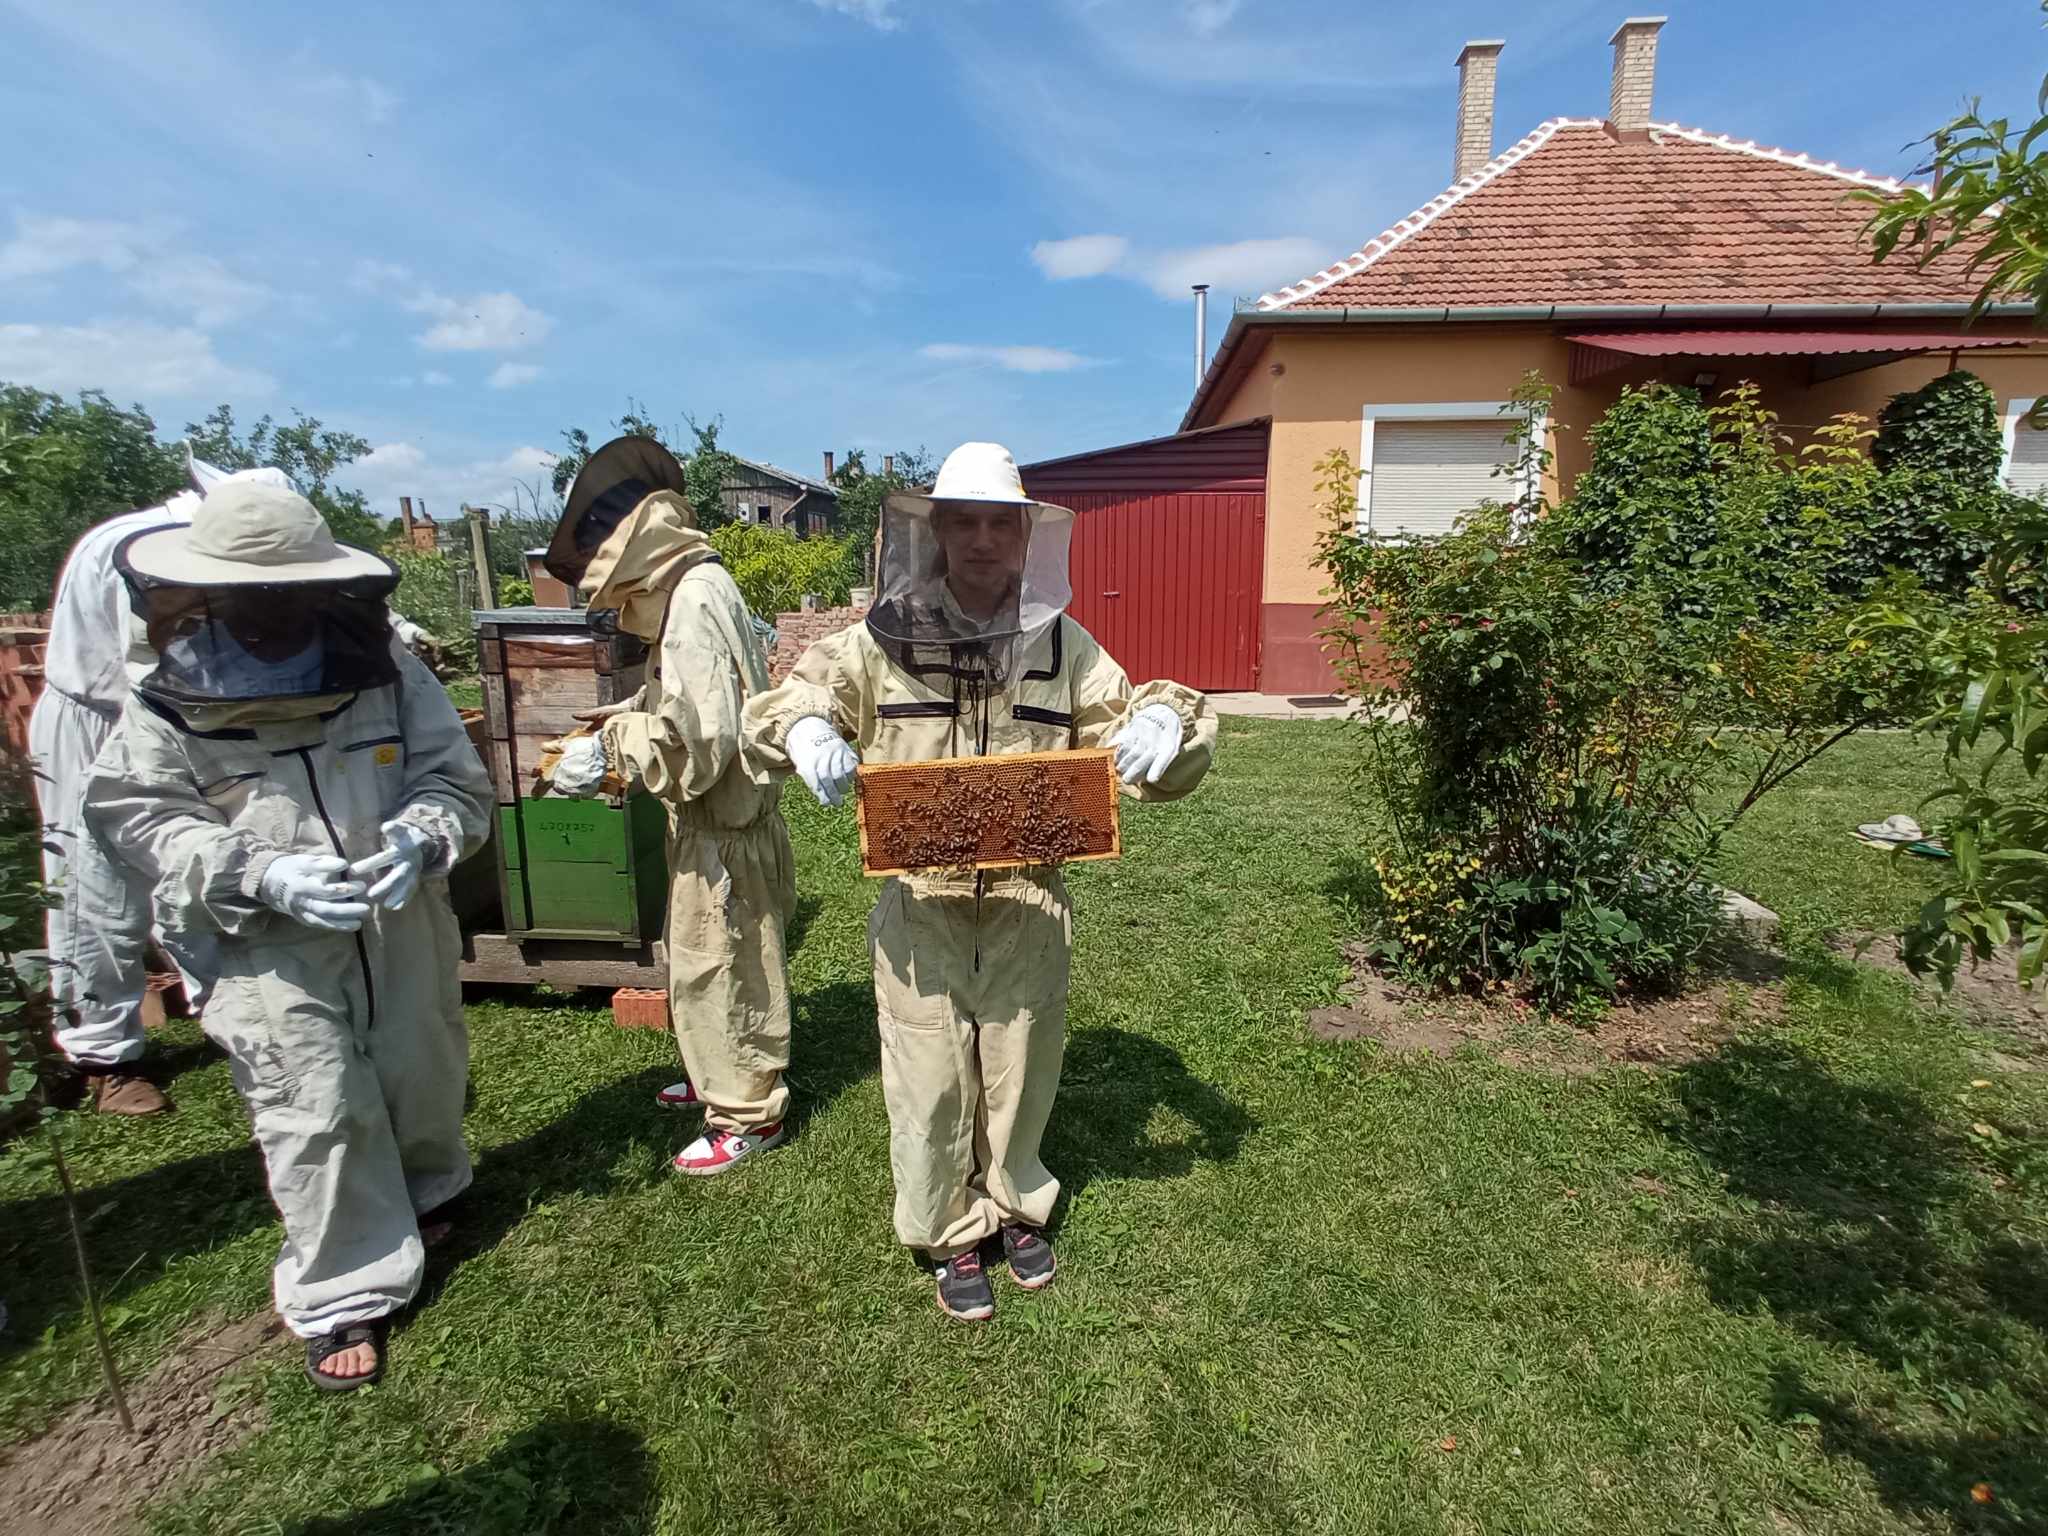 Védőruhás méhészek méhsejteket vizsgálnak egy vörös és sárga ház előtt. Egy ember egy méhsejtet tart fel, míg mások a közeli kaptárakat vizsgálják. A jelenet egy füves udvaron játszódik, tiszta égbolt felett.